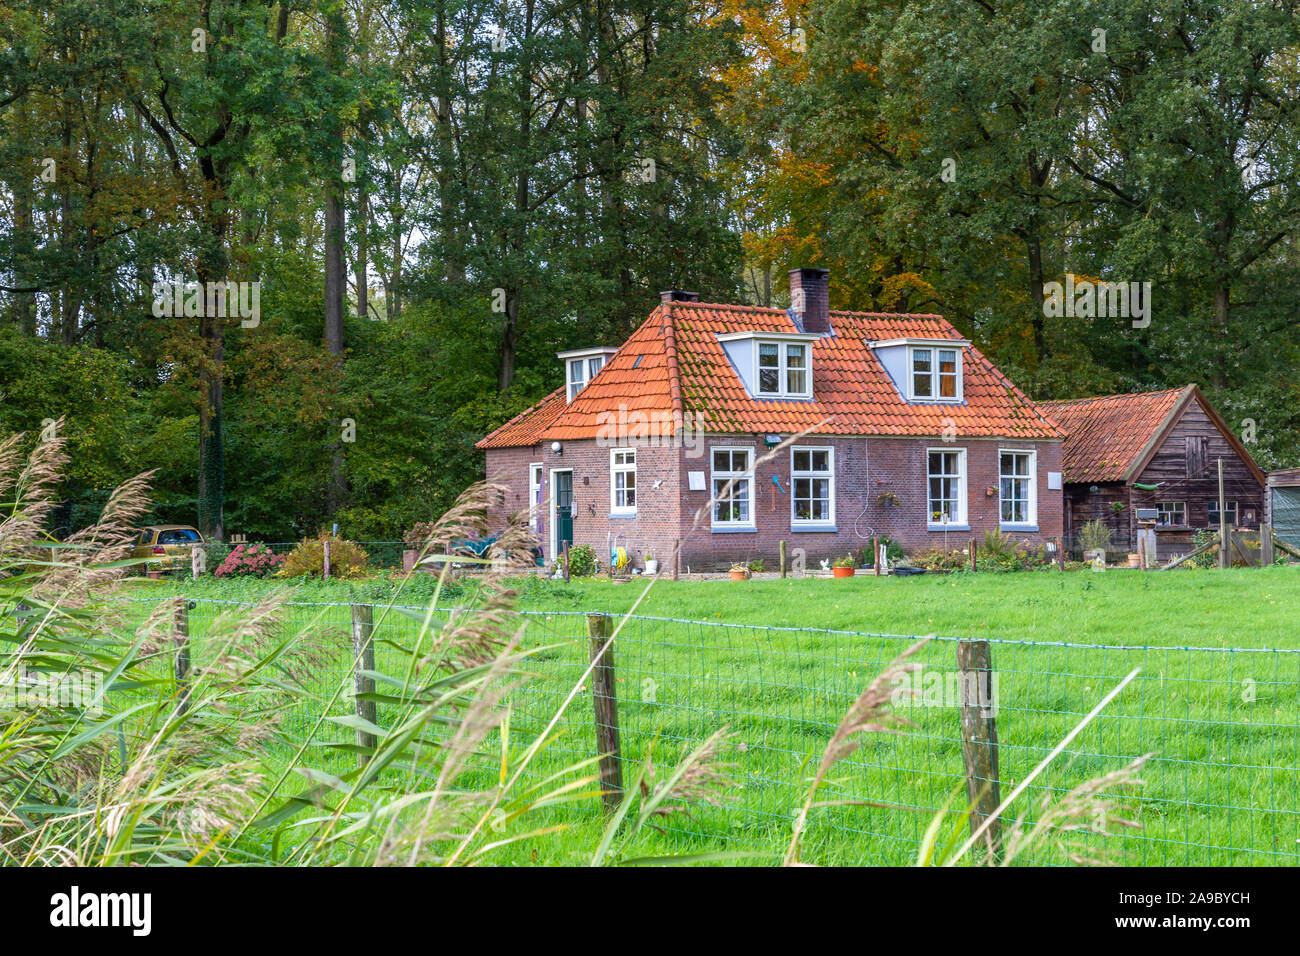 La maison de forestier traditionnel néerlandais ou maintenant hiliday Accueil Immobilier à Windesheim à Zwolle, Overijssel aux Pays-Bas Banque D'Images